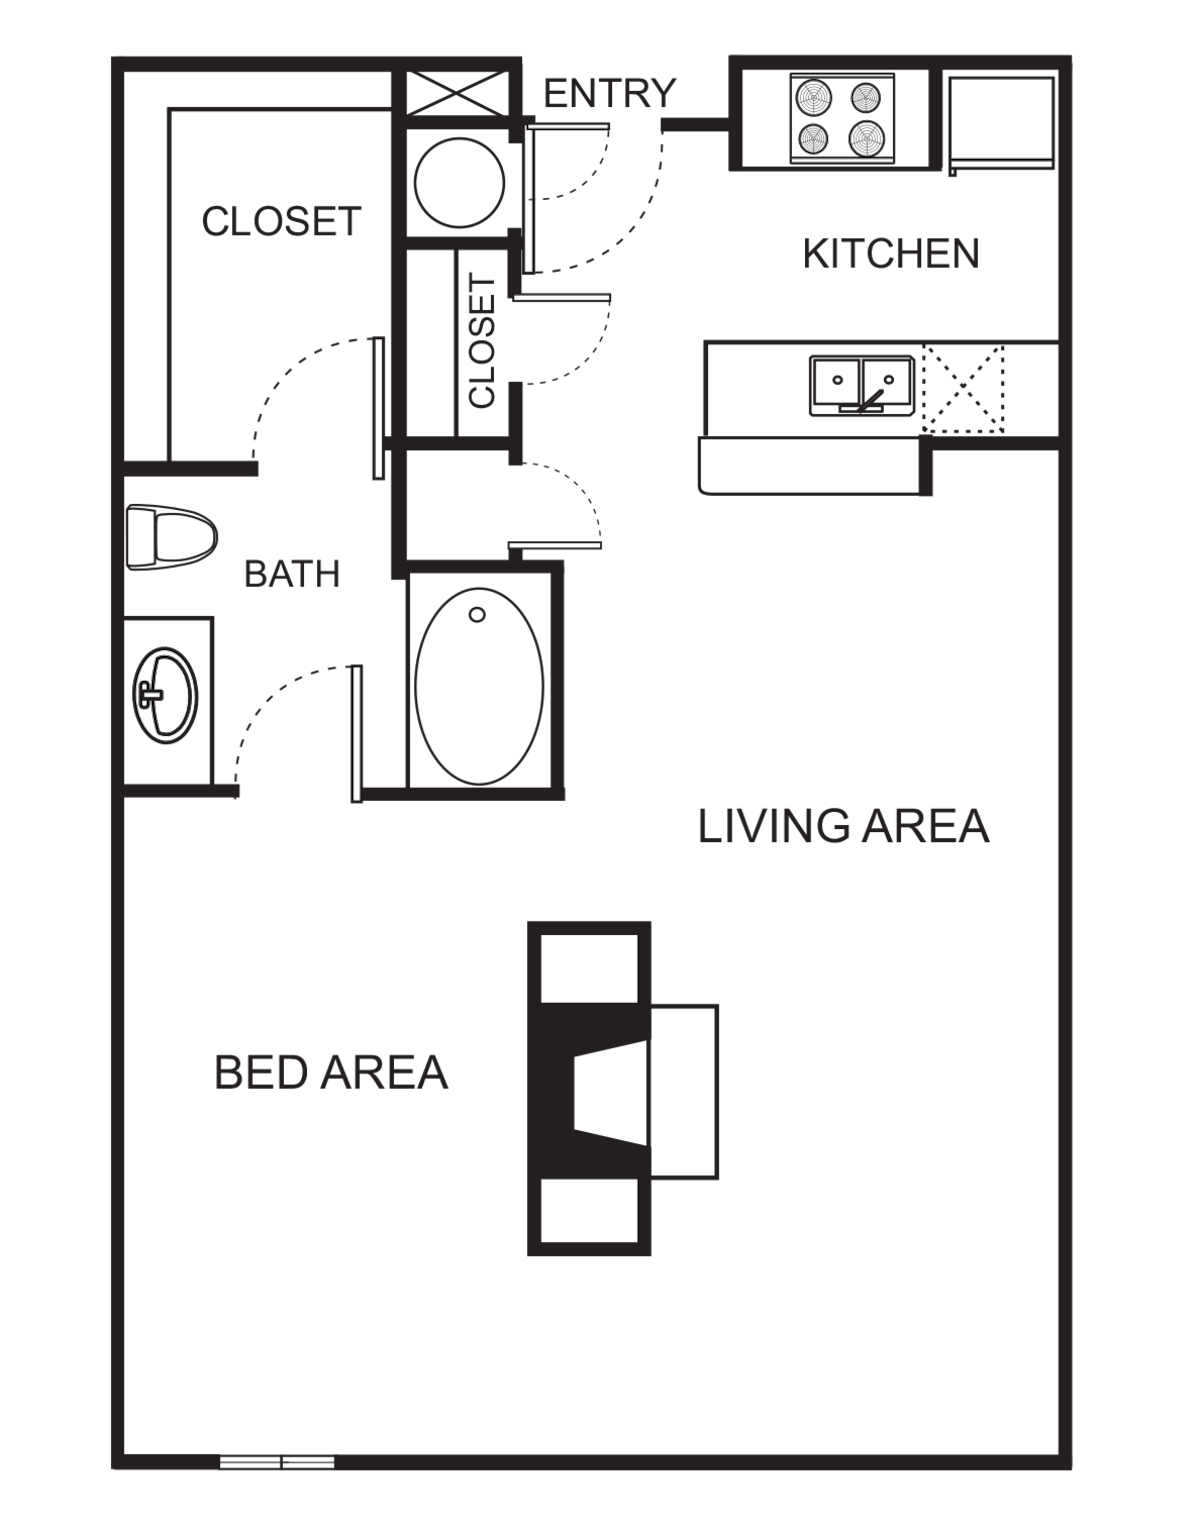 Floorplan diagram for S8 Studio, showing Studio